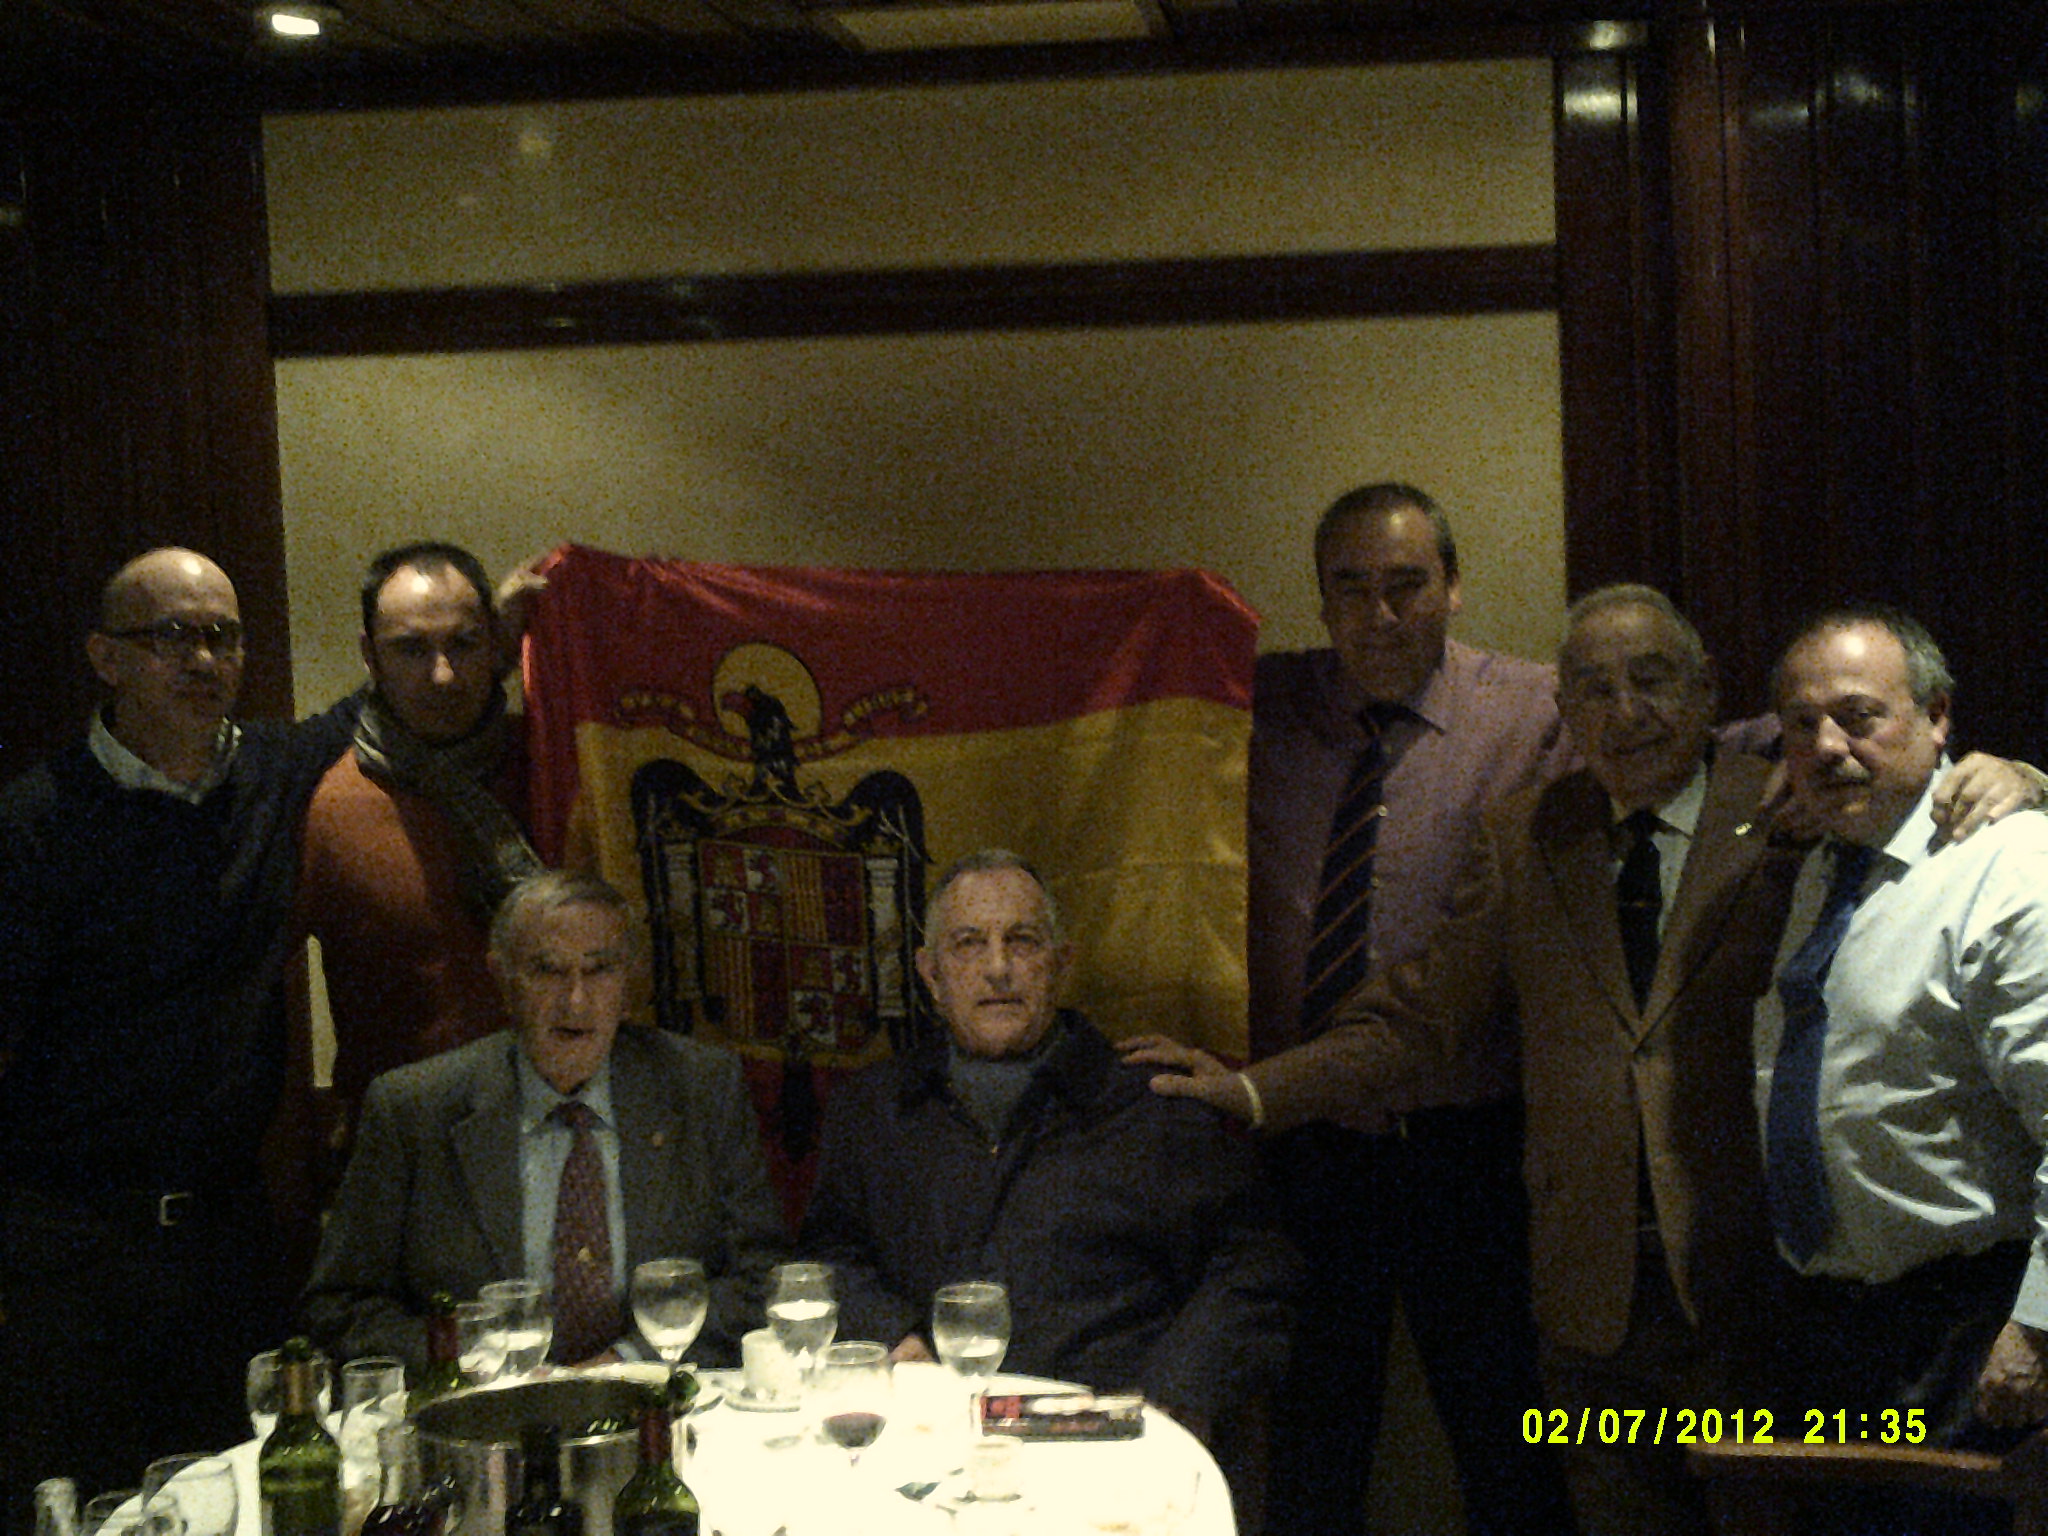 Armando Robles posa junto a algunos de los asistentes a su homenaje, entre ellos el ex gobernador civil de Tarragona, Agustín Castejón, el abogado Gerardo Sánchez y el político barcelonés Gerard Bellalta.